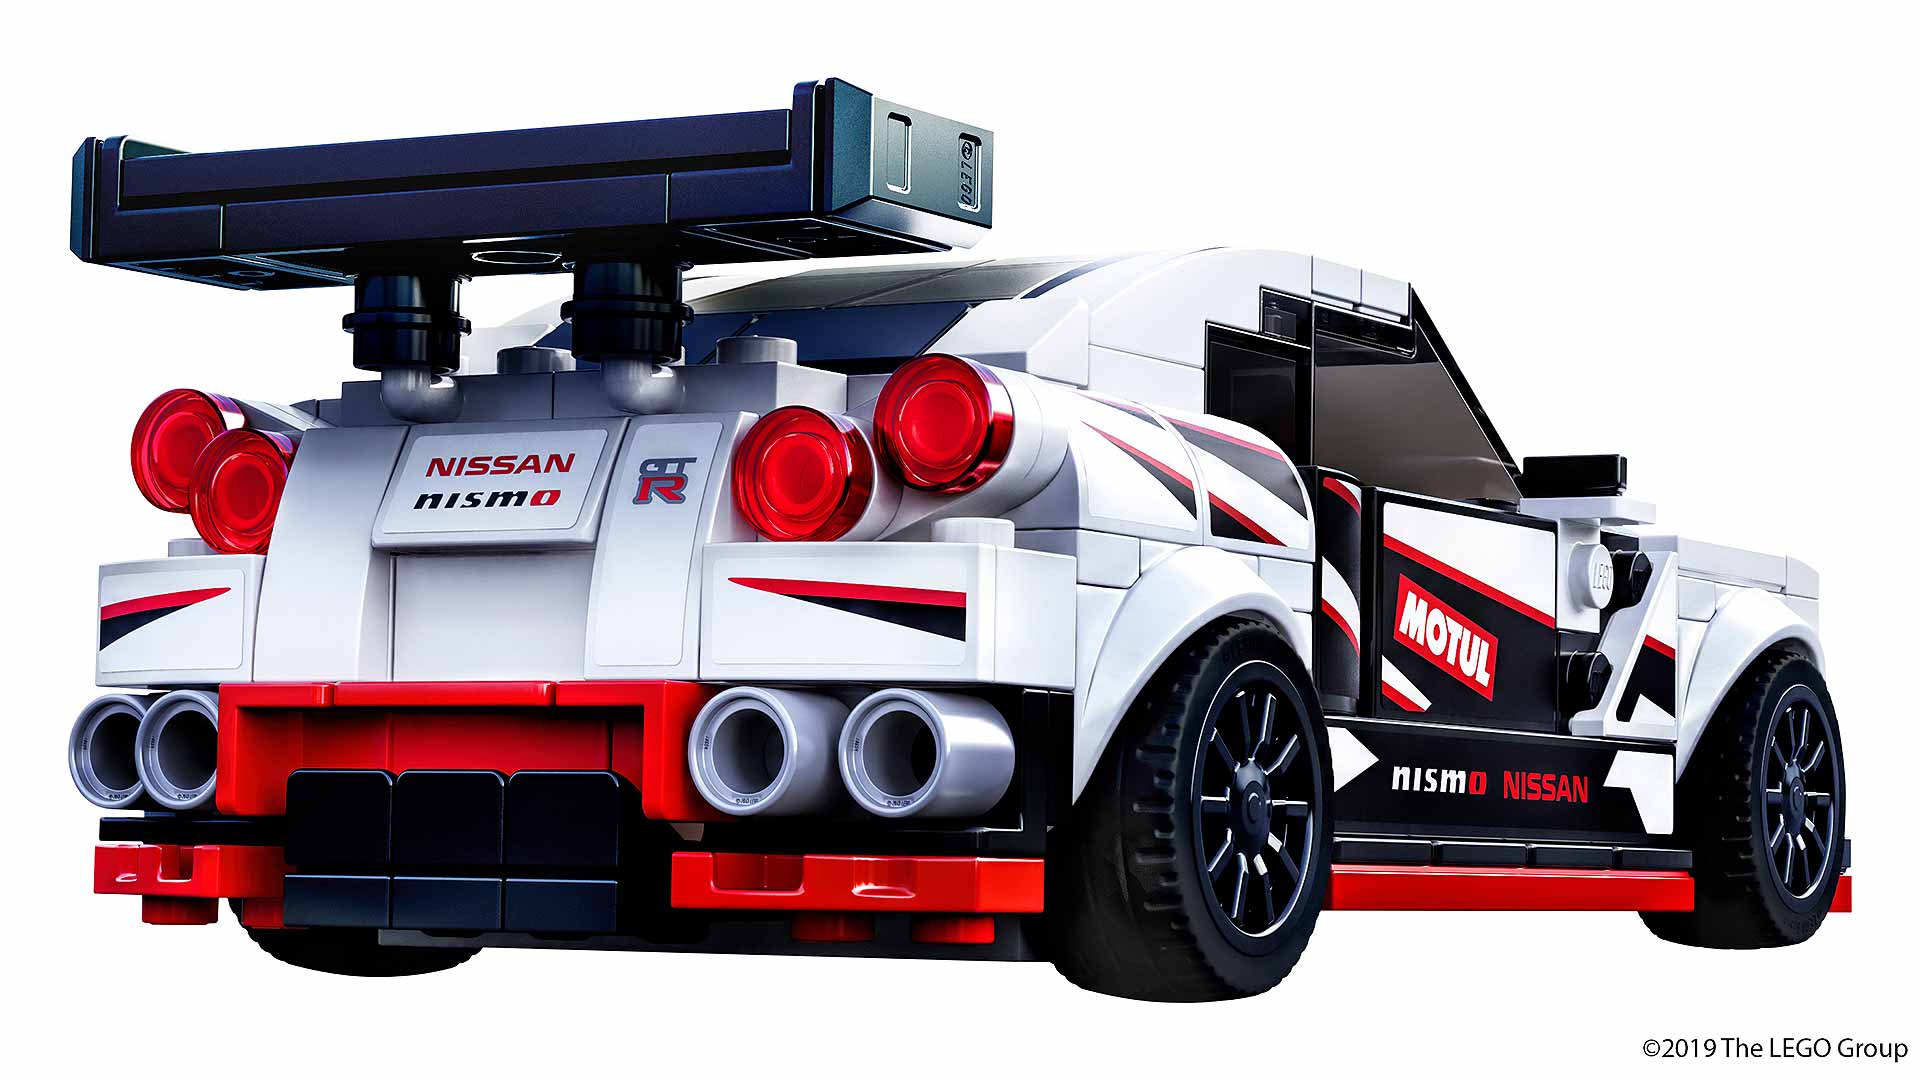 LEGO Nissan GT-R